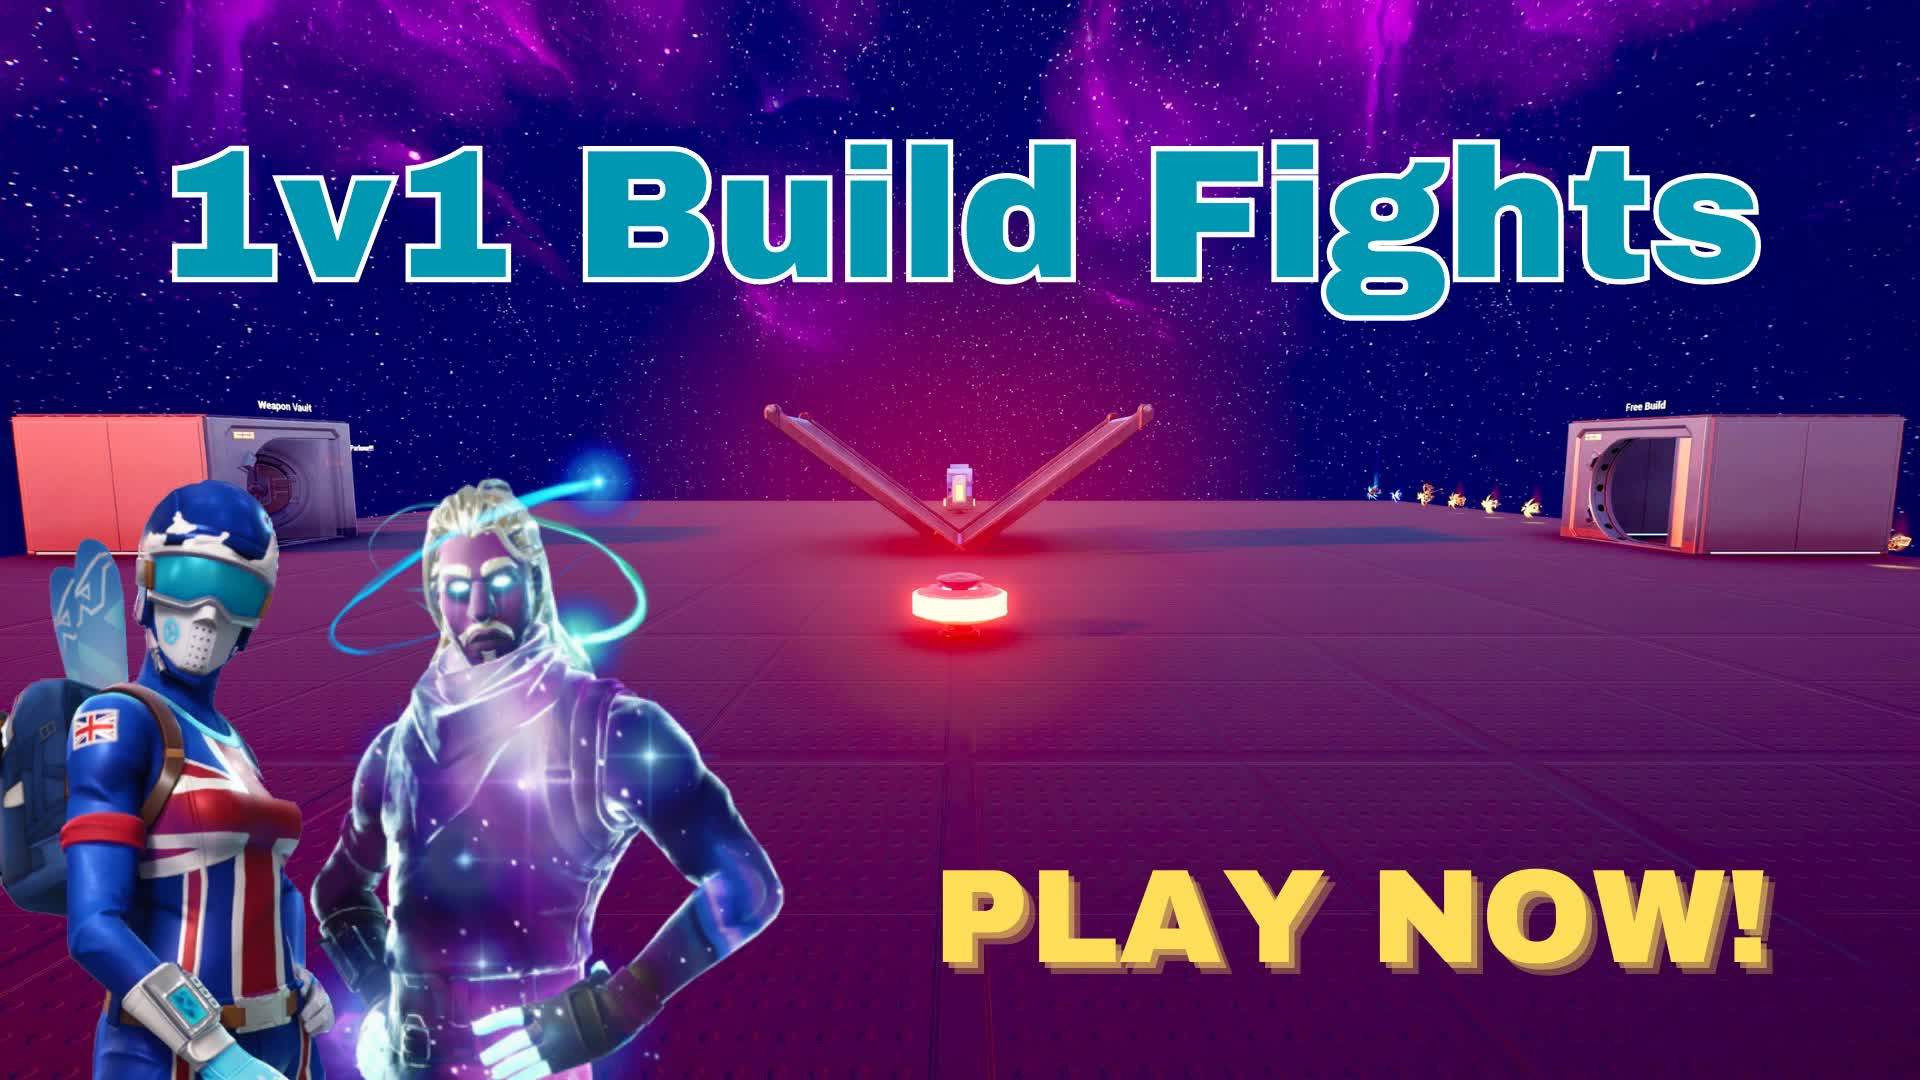 Legend 1v1 Build Fights!